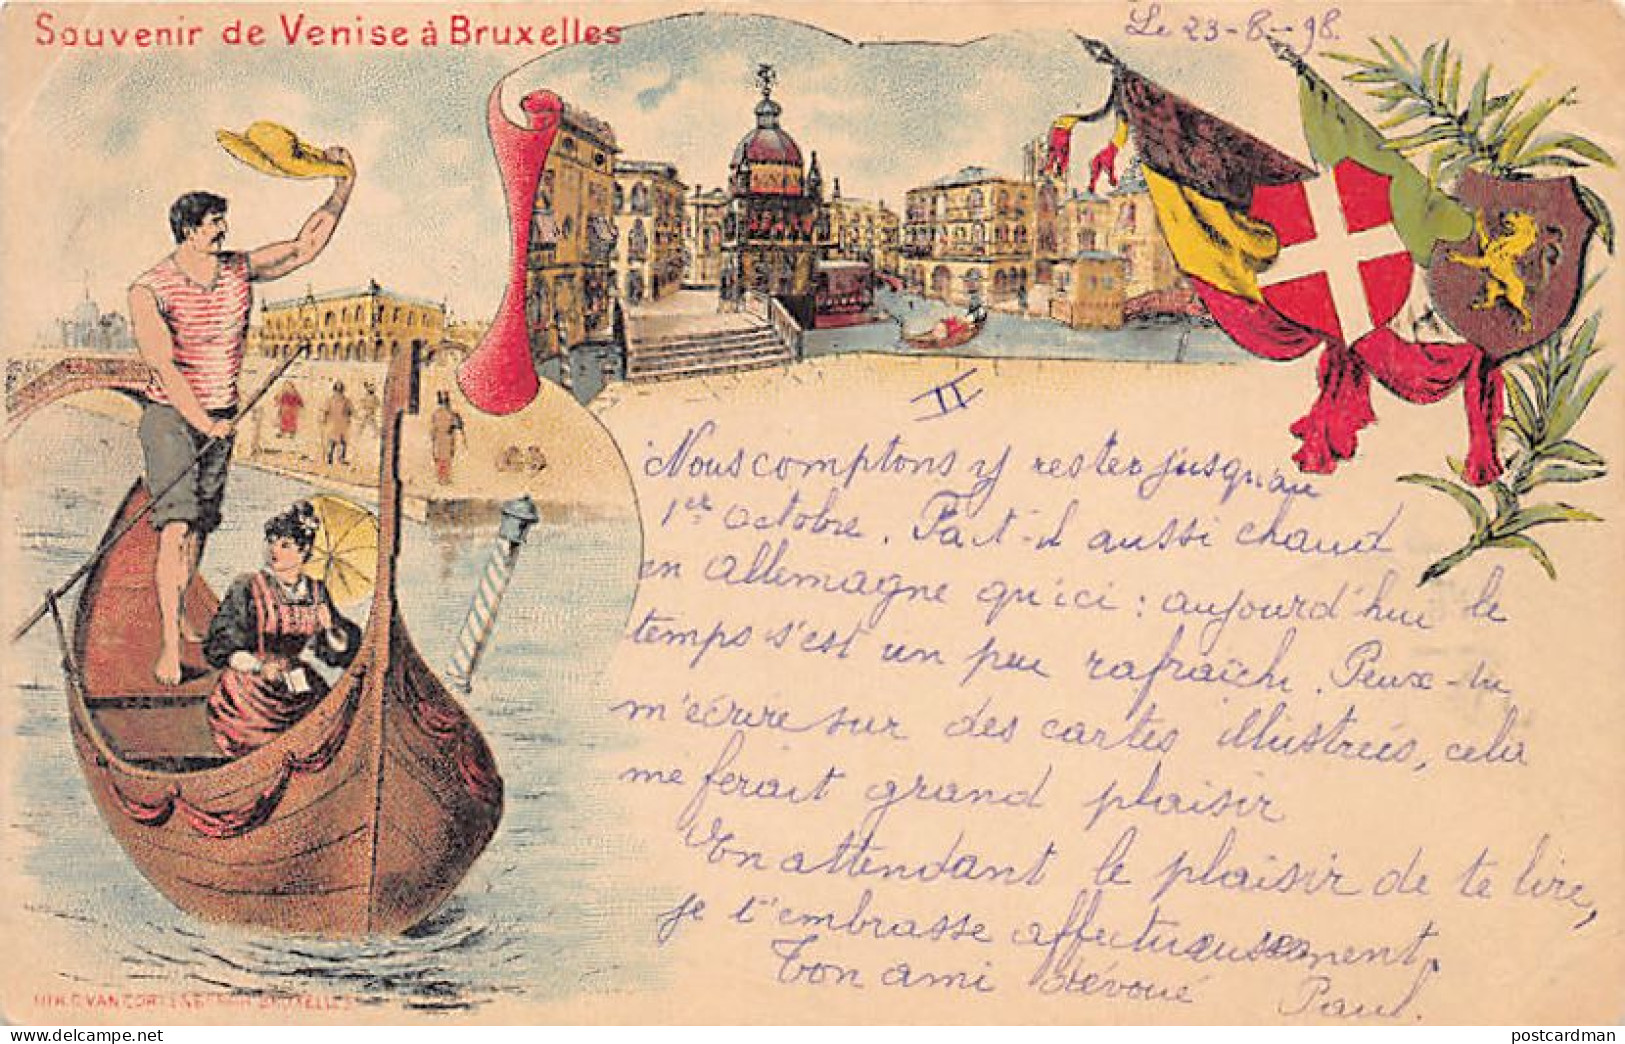 Belgique - Souvenir De Venise à Bruxelles - Litho - Gondole - Année 1898 - Expositions Universelles